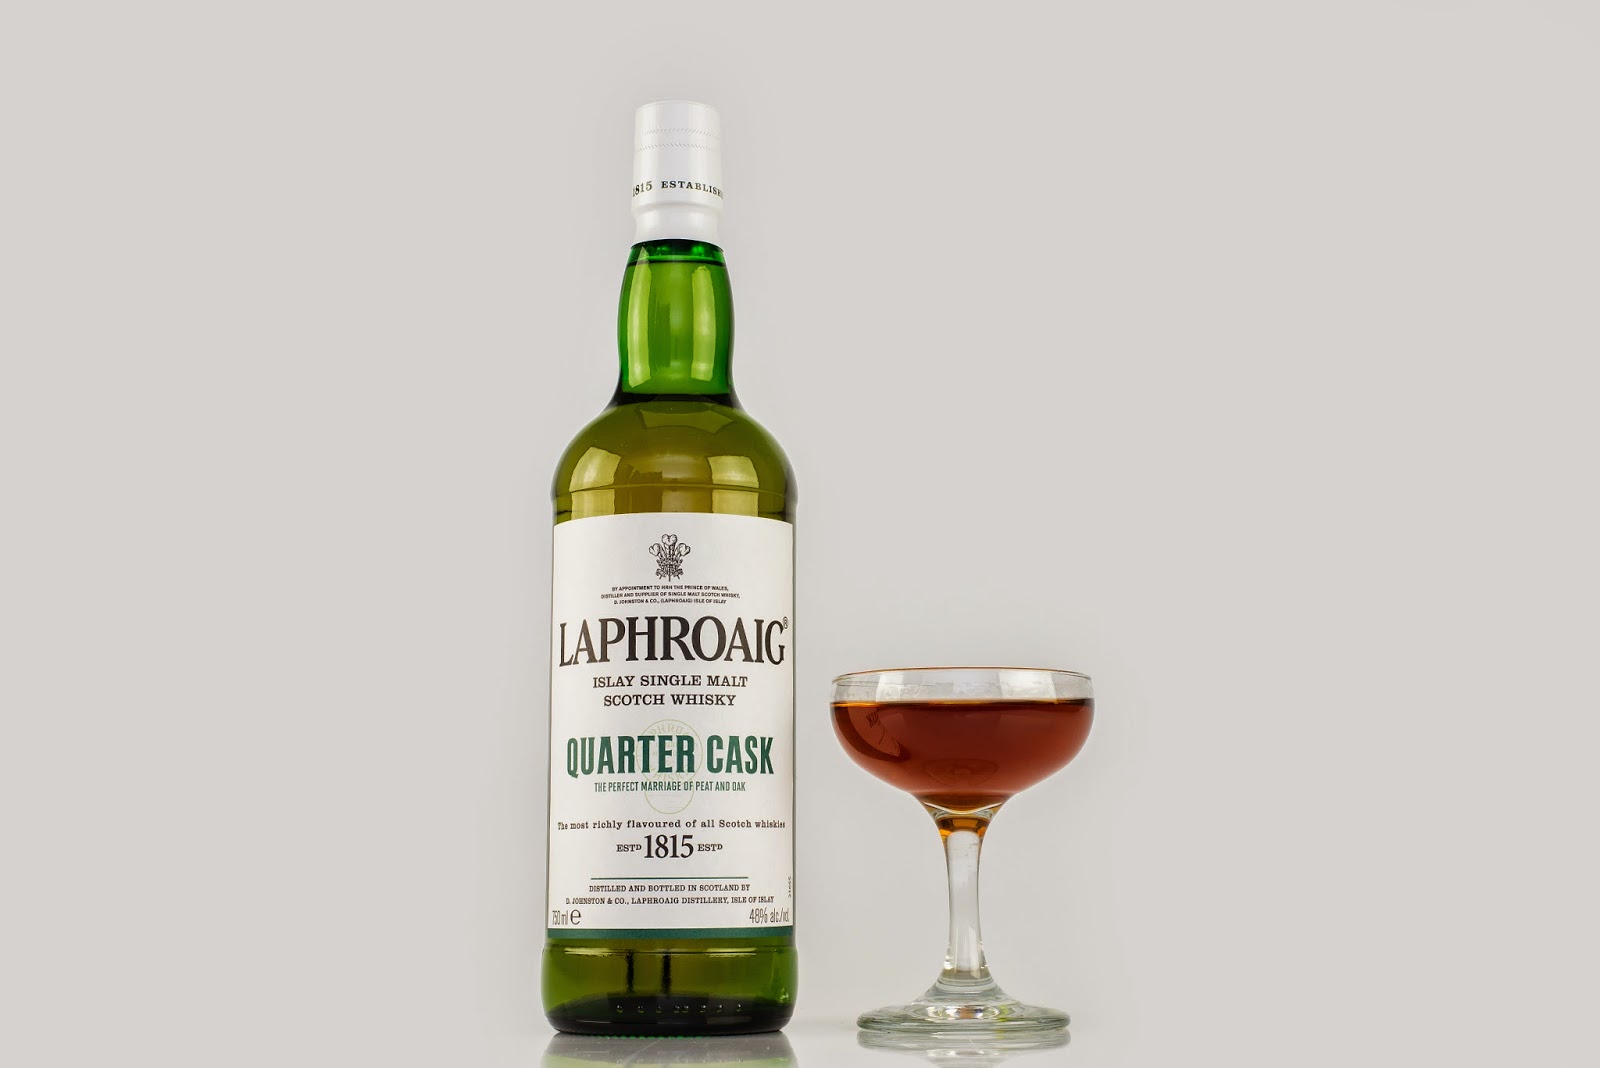 Laphroaig Quarter Cask cocktail